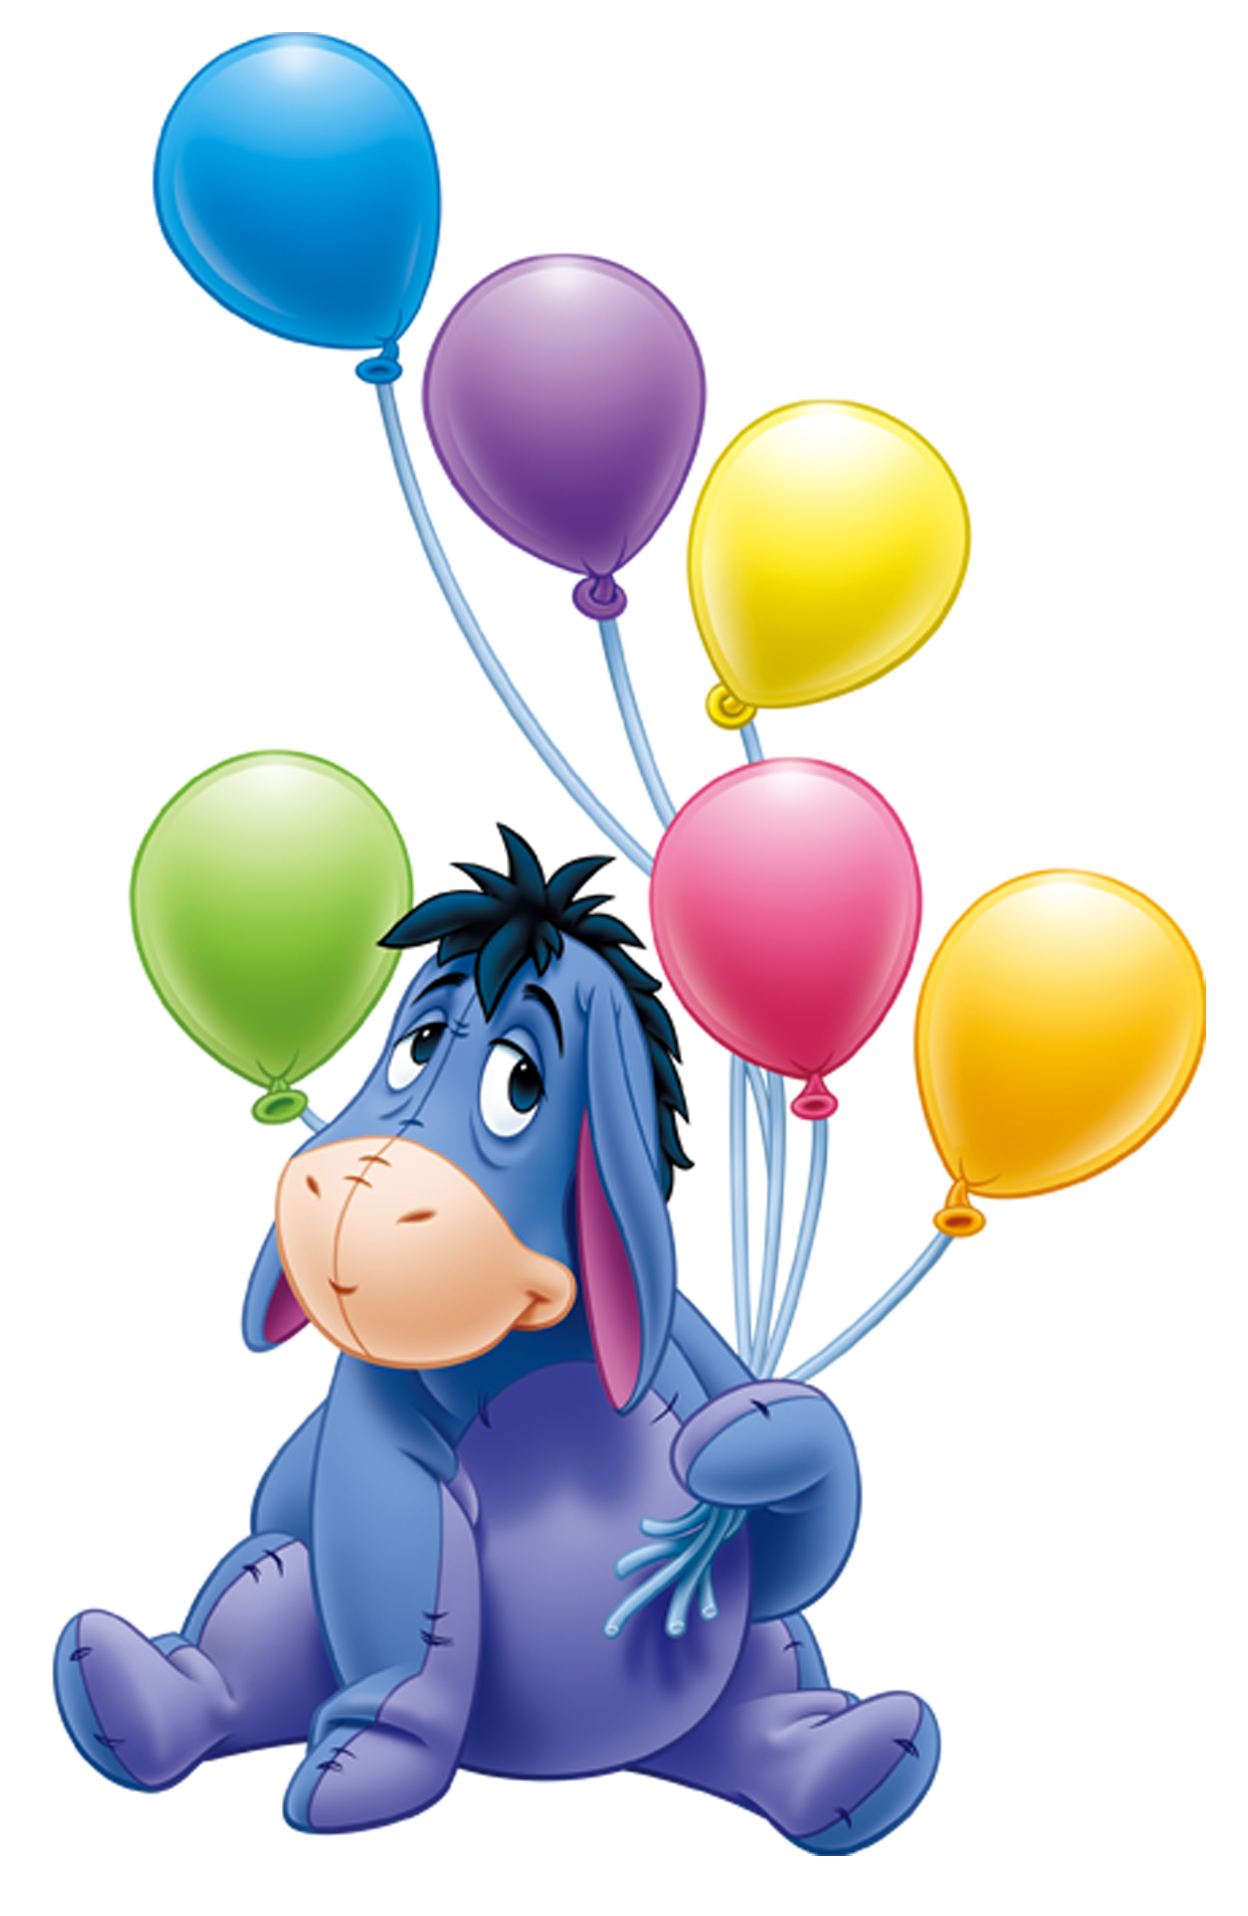 Eeyore with Balloons PNG Transparent Cartoon